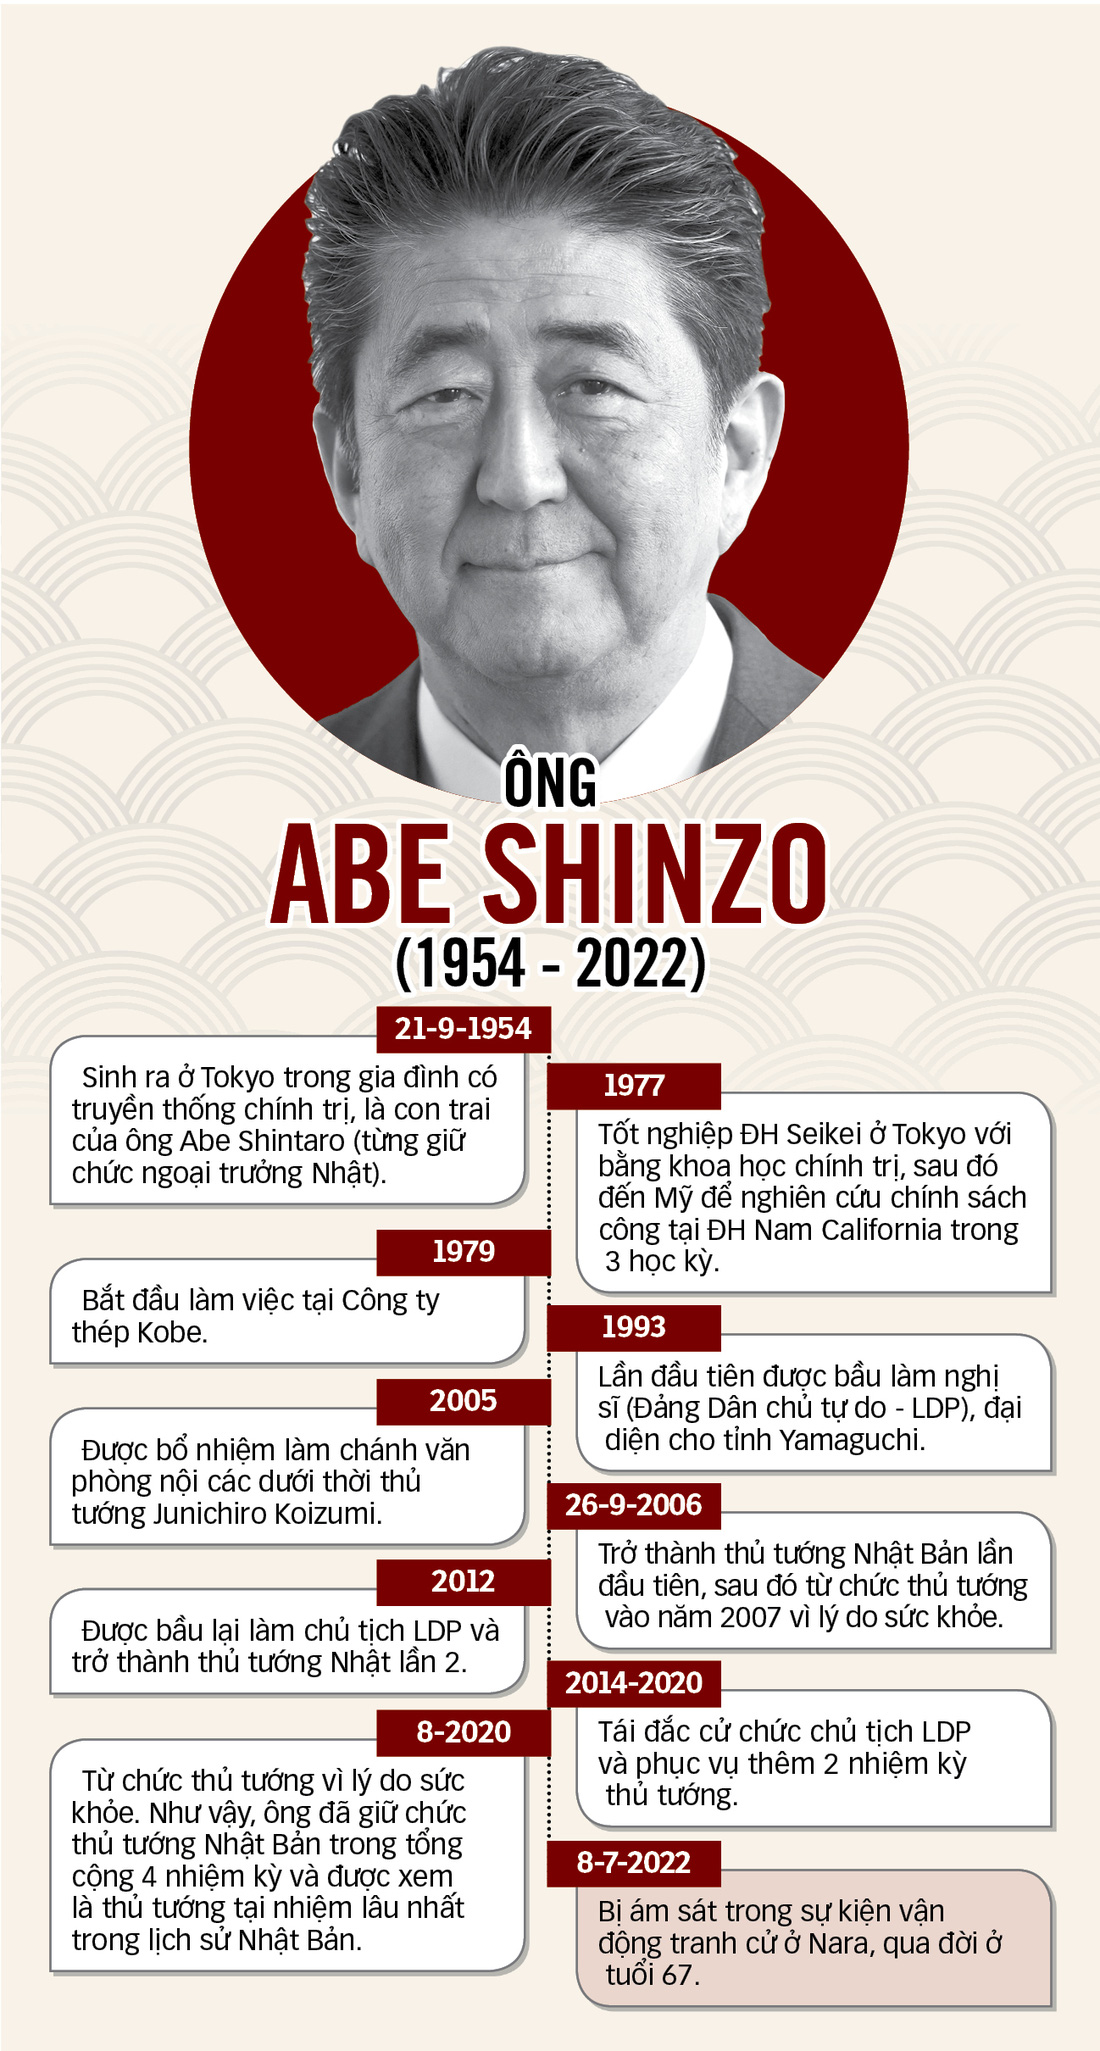 Chủ tịch nước: Việt Nam luôn khắc ghi tâm khảm tình cảm của cố thủ tướng Abe Shinzo - Ảnh 6.